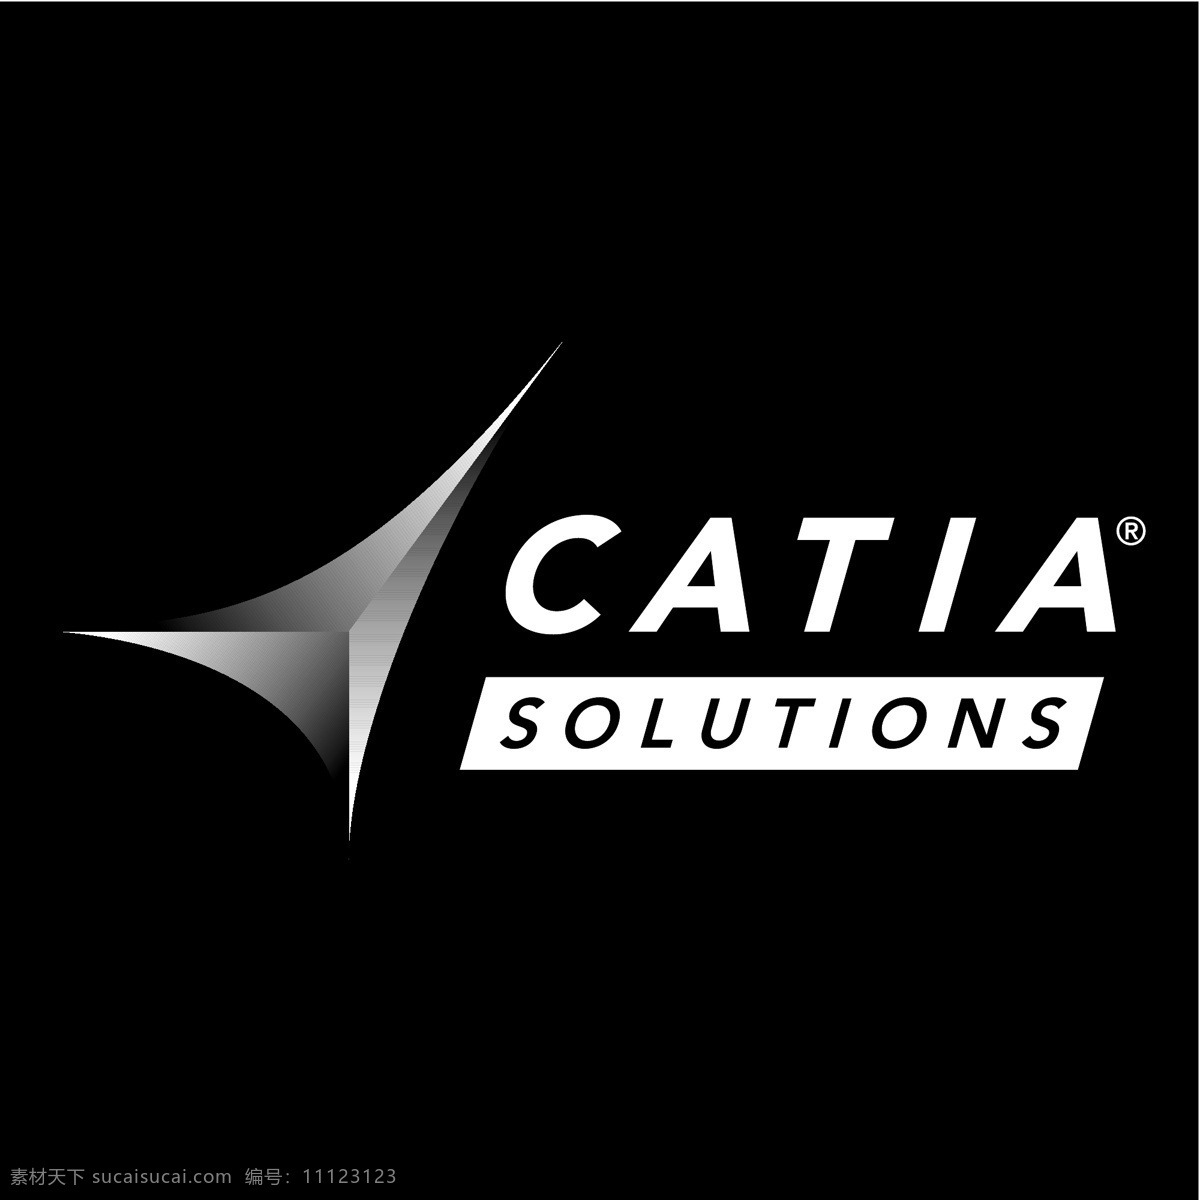 catia 软件 解决方案 矢量 标识 图形 解 解的解向量 向量 黑色